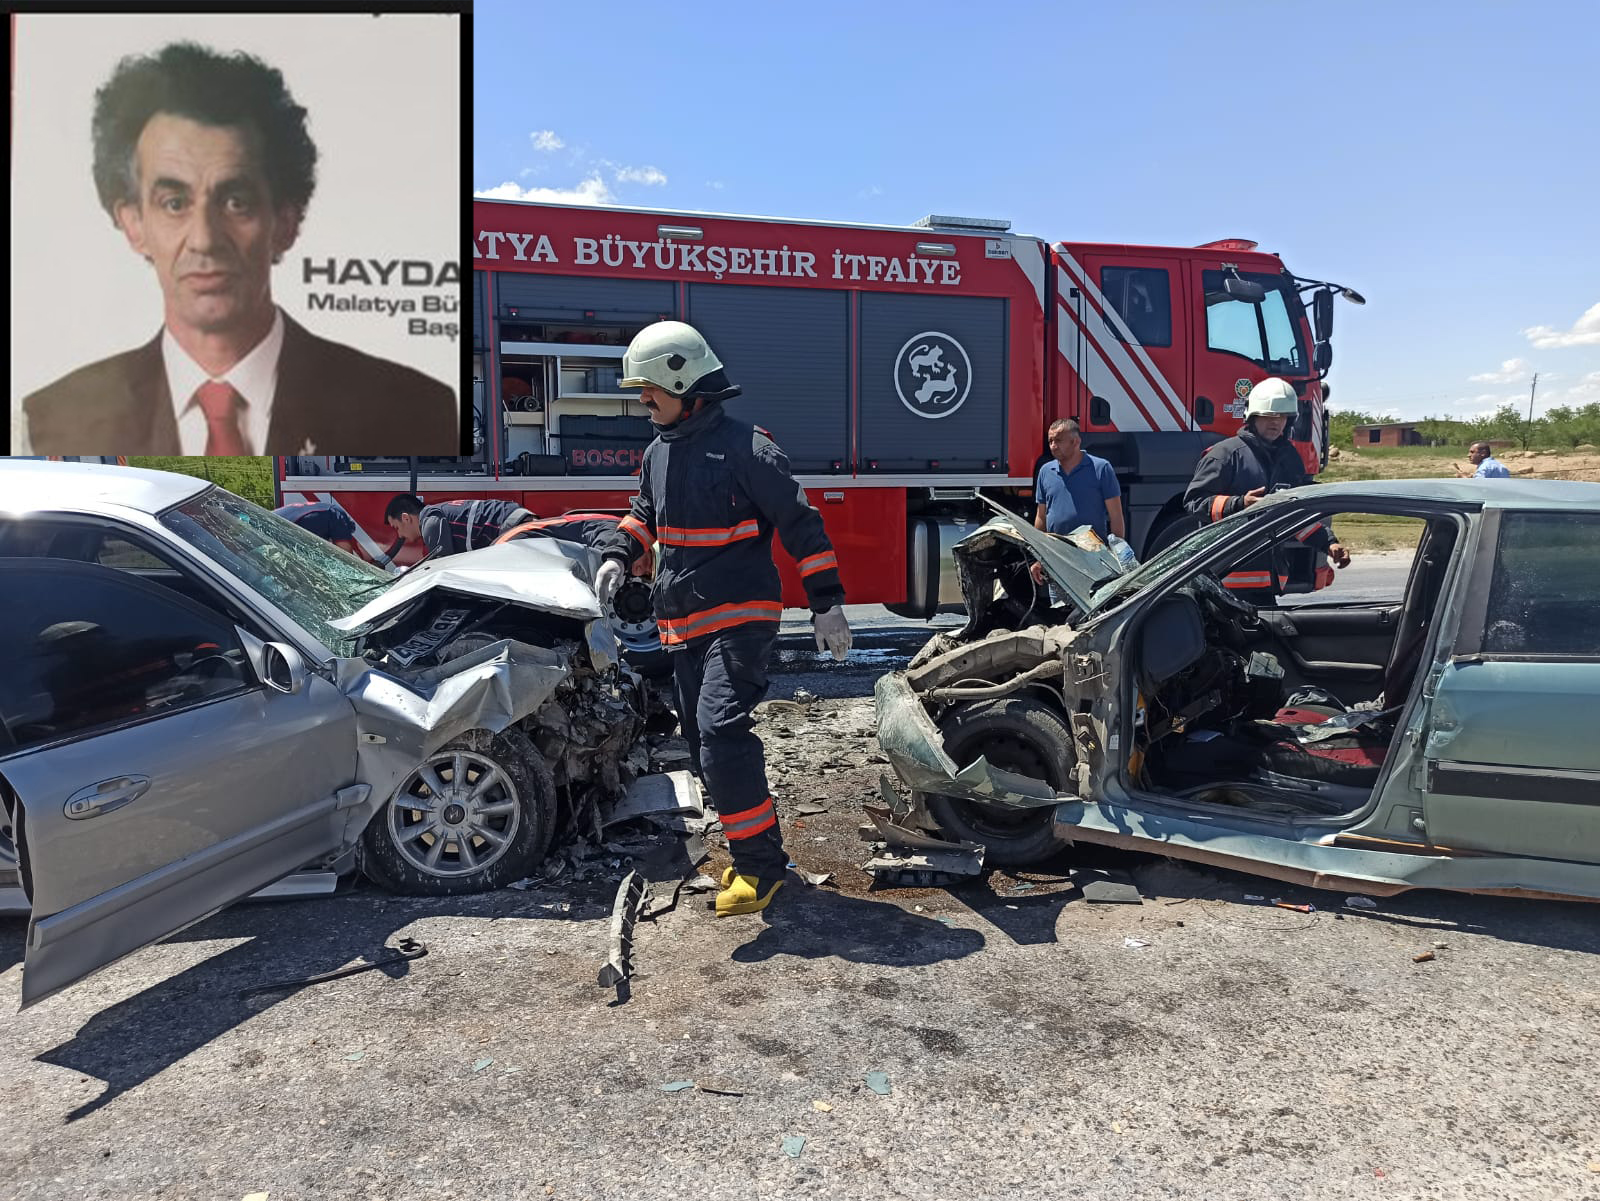 Malatya’da iki otomobilin kafa kafaya çarpışması sonucu meydana gelen trafik kazasında DSP İl Başkanı Haydar Levent ölürken, diğer aracın sürücüsü de yaralandı.